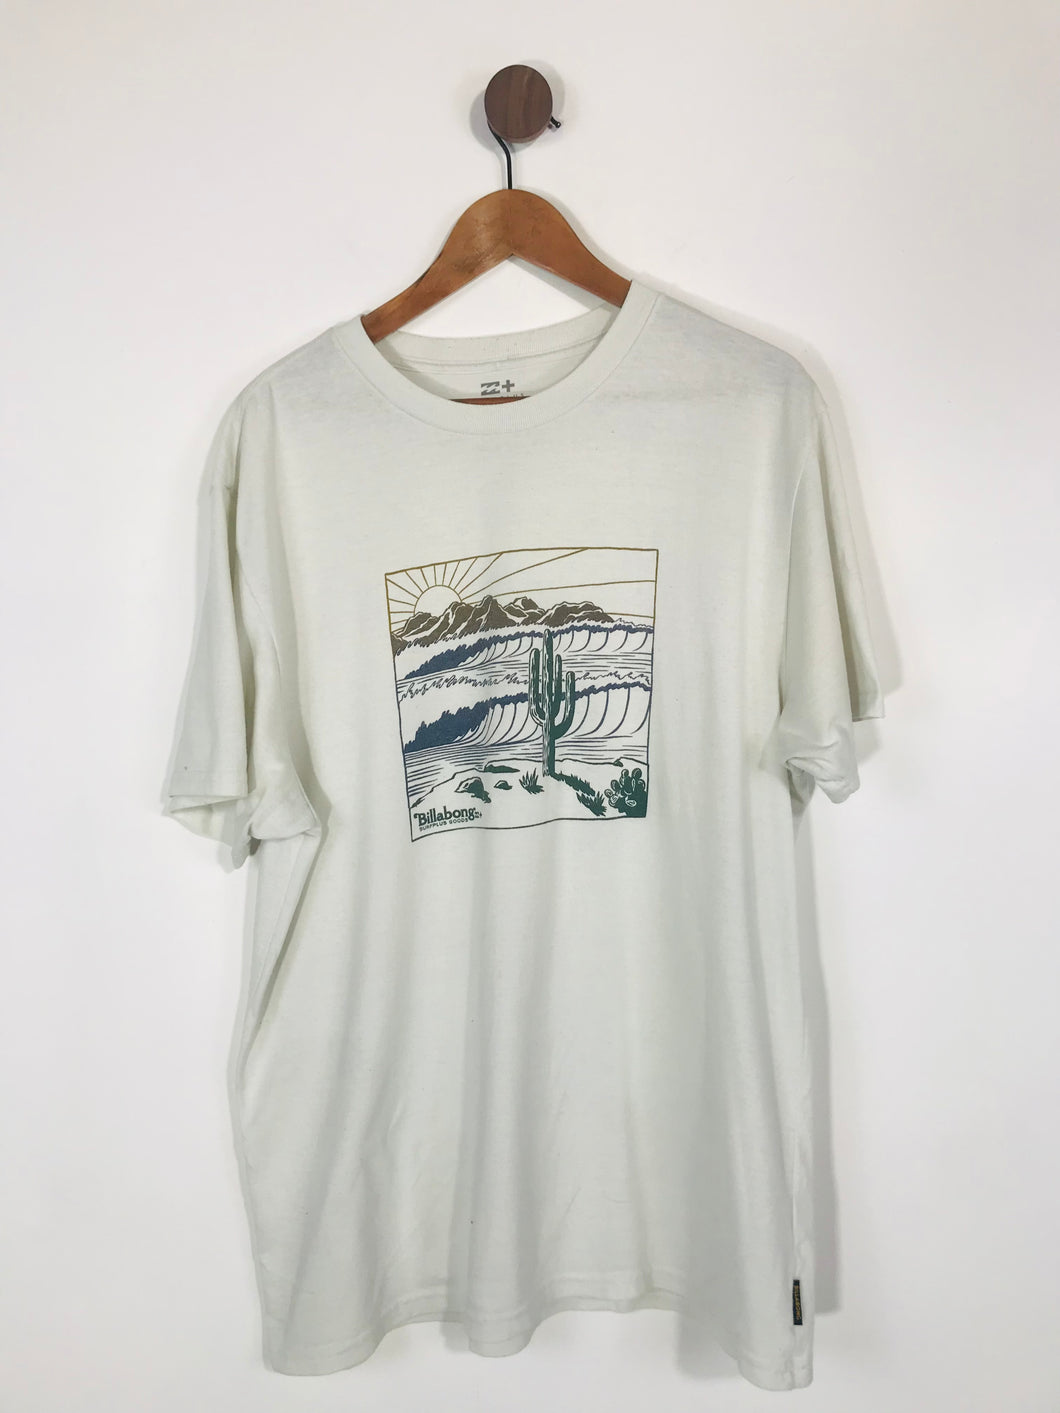 Surf Plus Billabong Men's Cotton Graphic design T-Shirt | XL | White